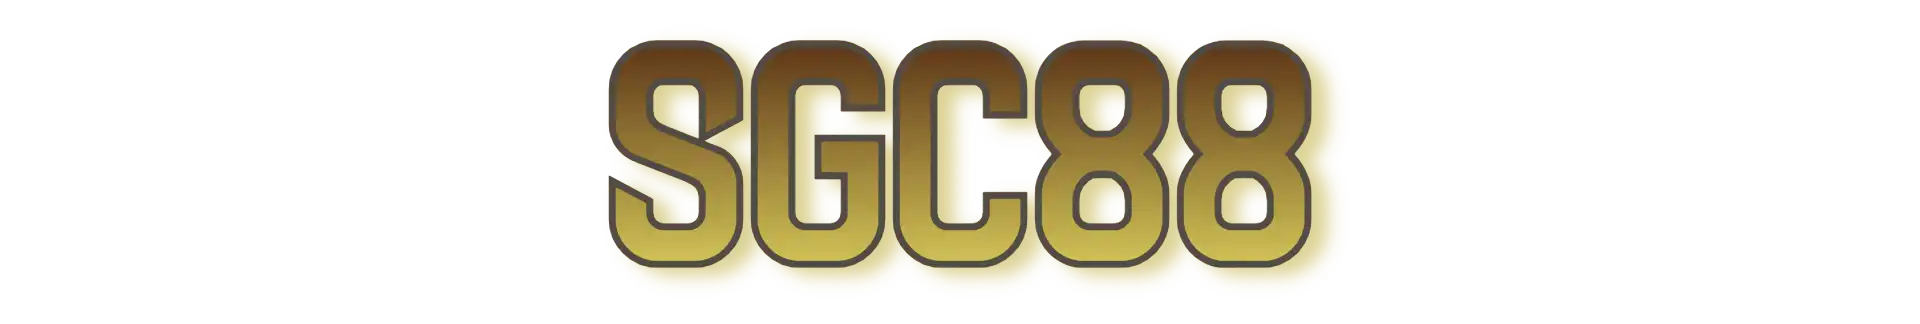 SGC88